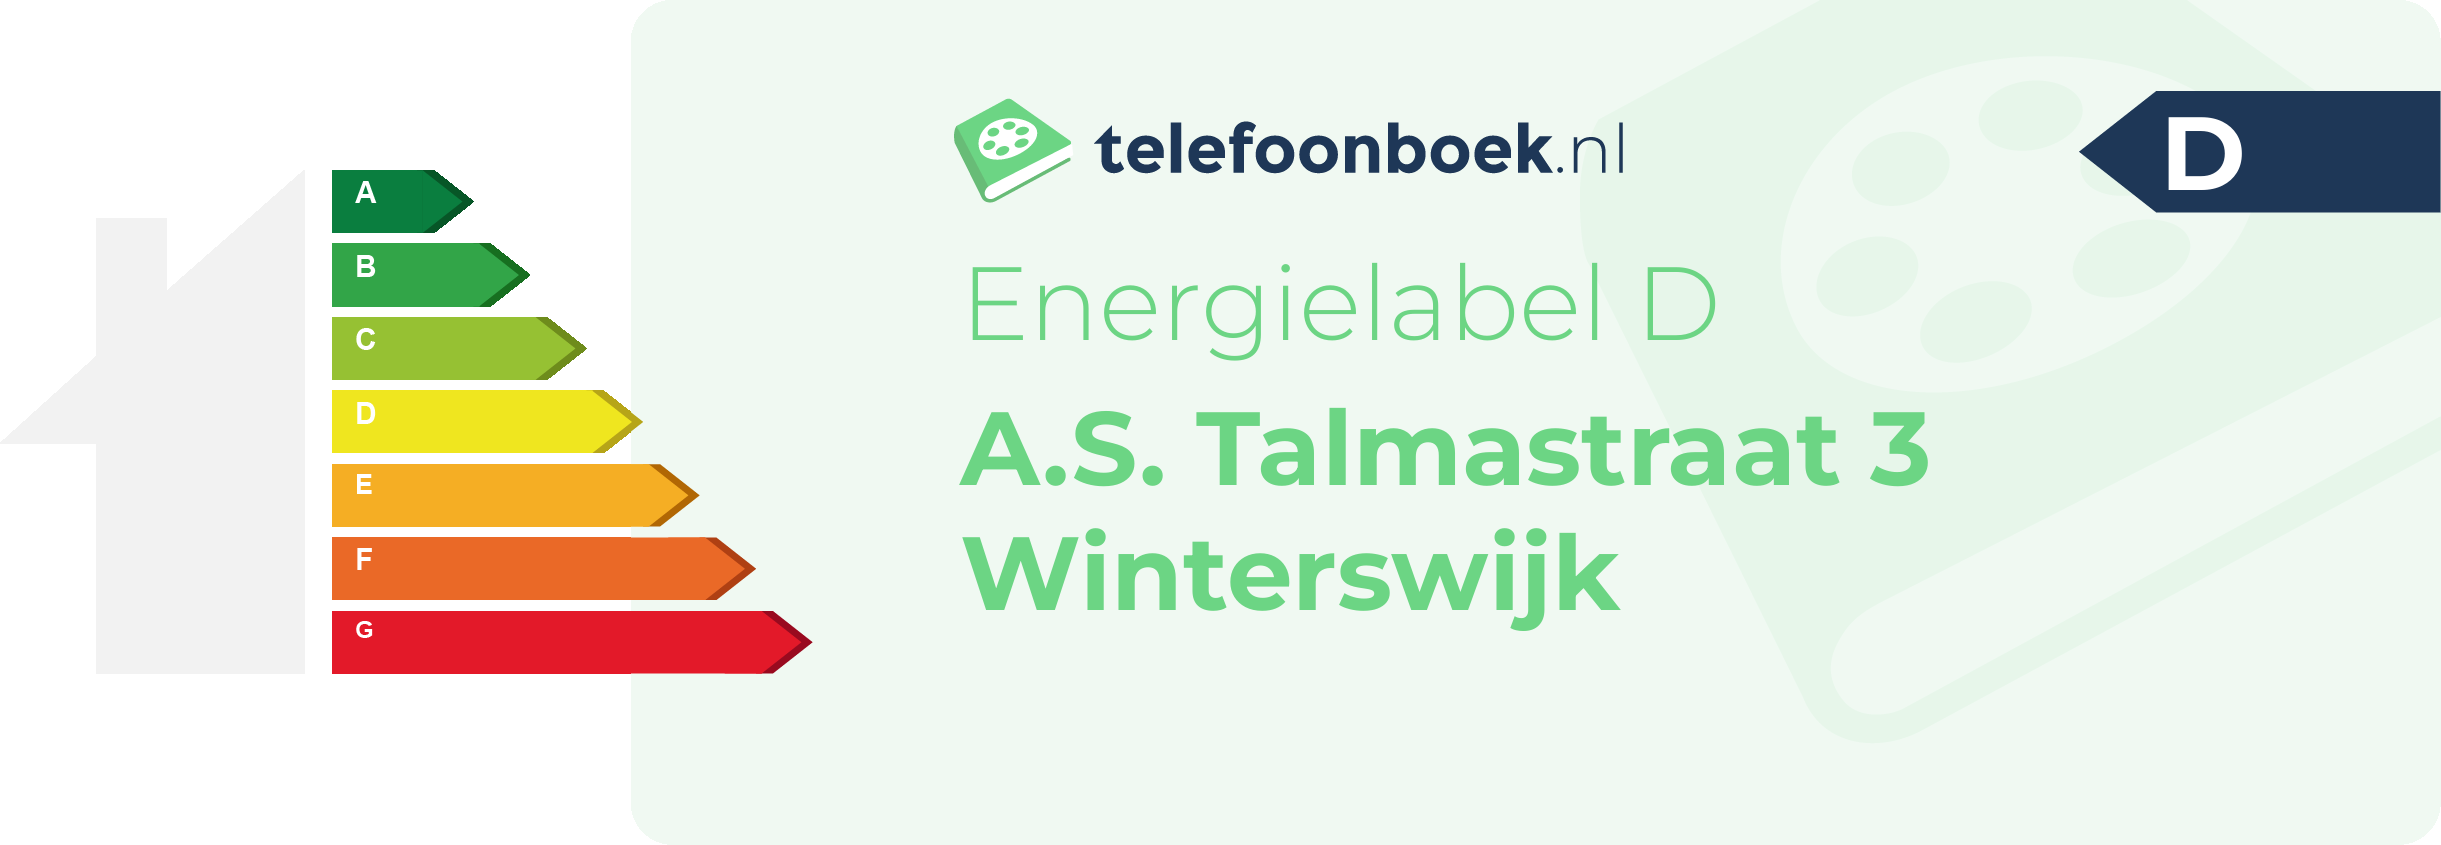 Energielabel A.S. Talmastraat 3 Winterswijk